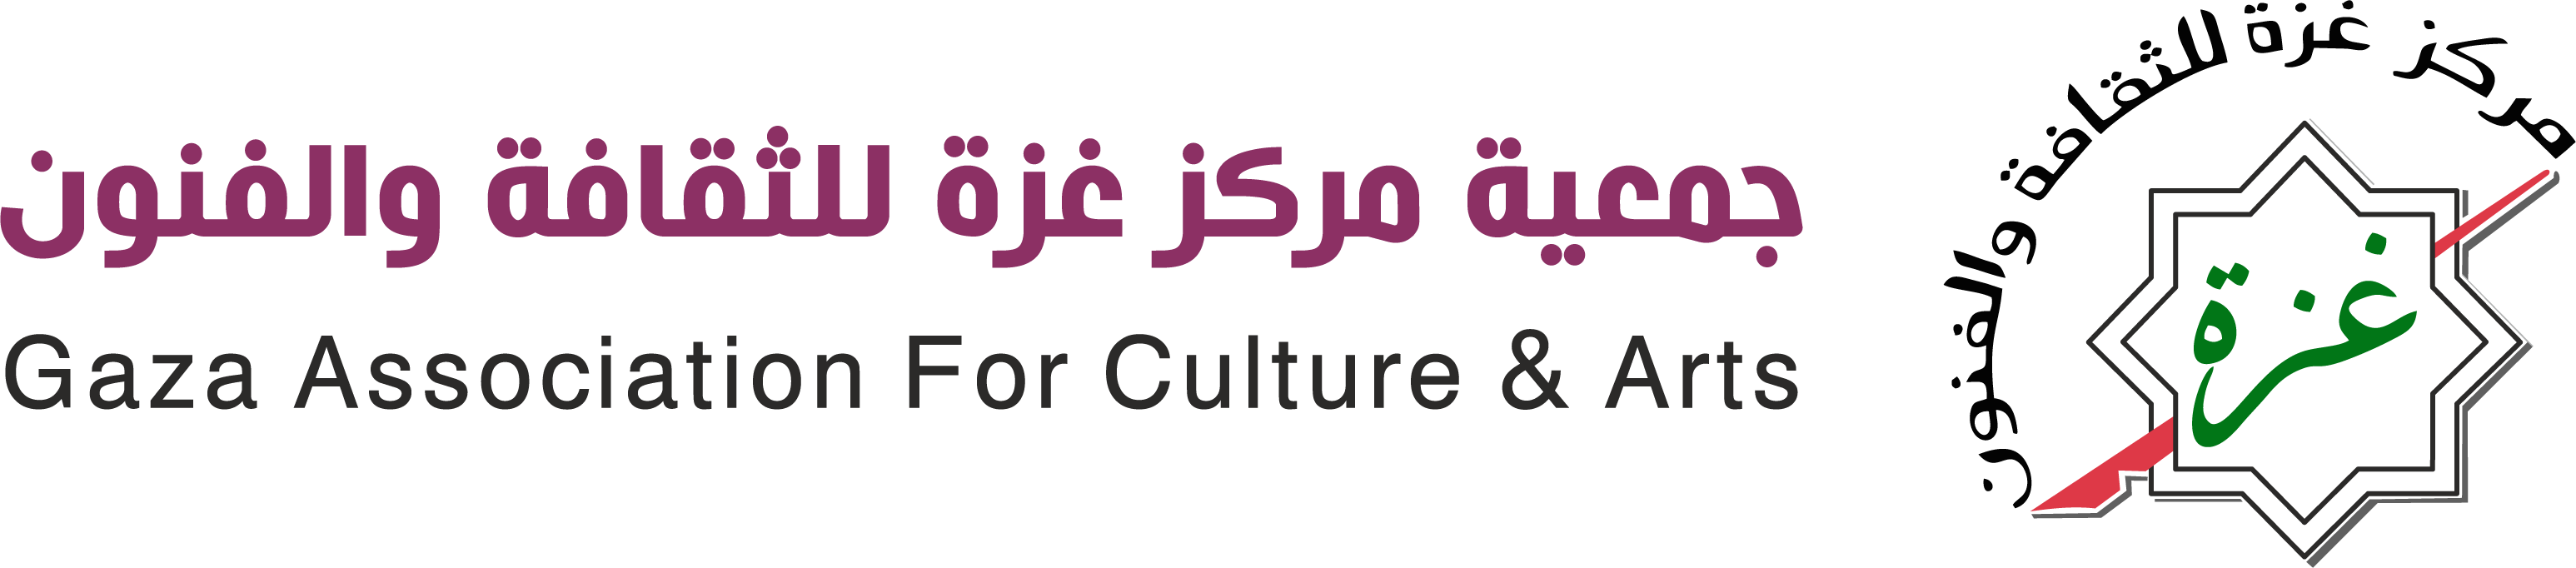 جمعية مركز غزة للثقافة والفنون